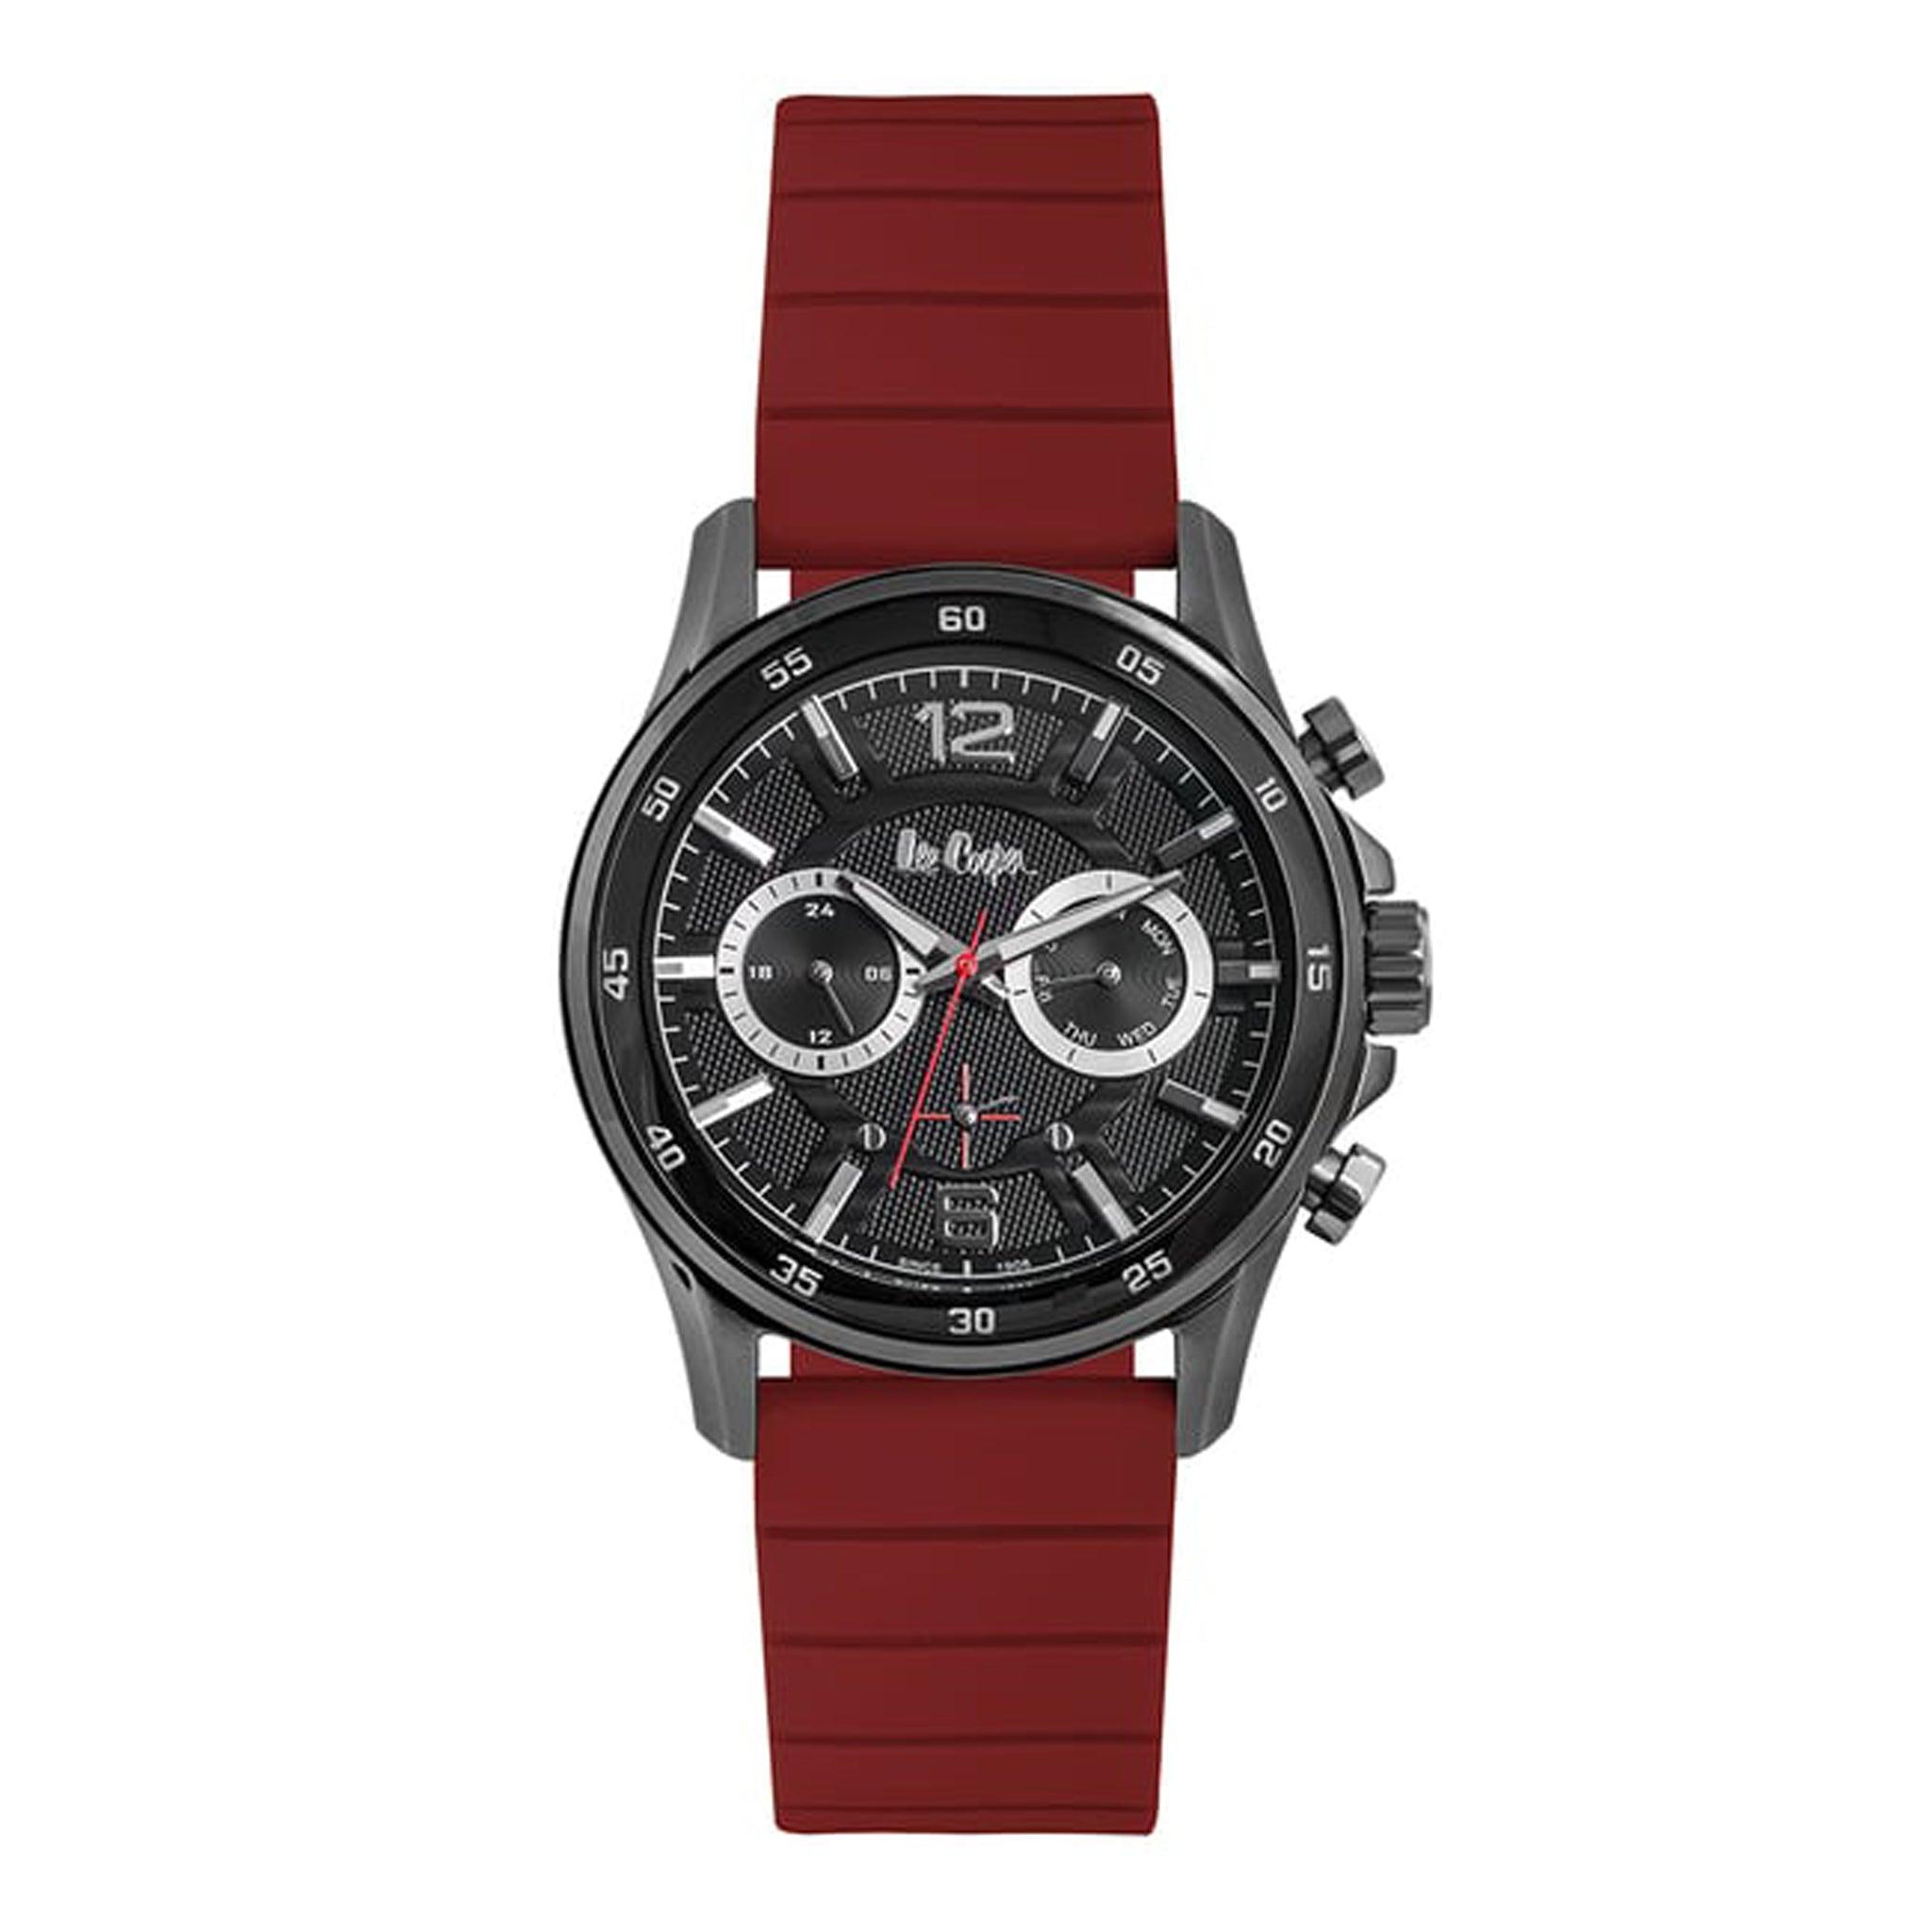 ساعة يد رجالية متعددة الوظائف - أسود و مينا باللون الأسود - بحزام أحمر من السيليكون لي كوبر Cooper Men's Multi Function Watch